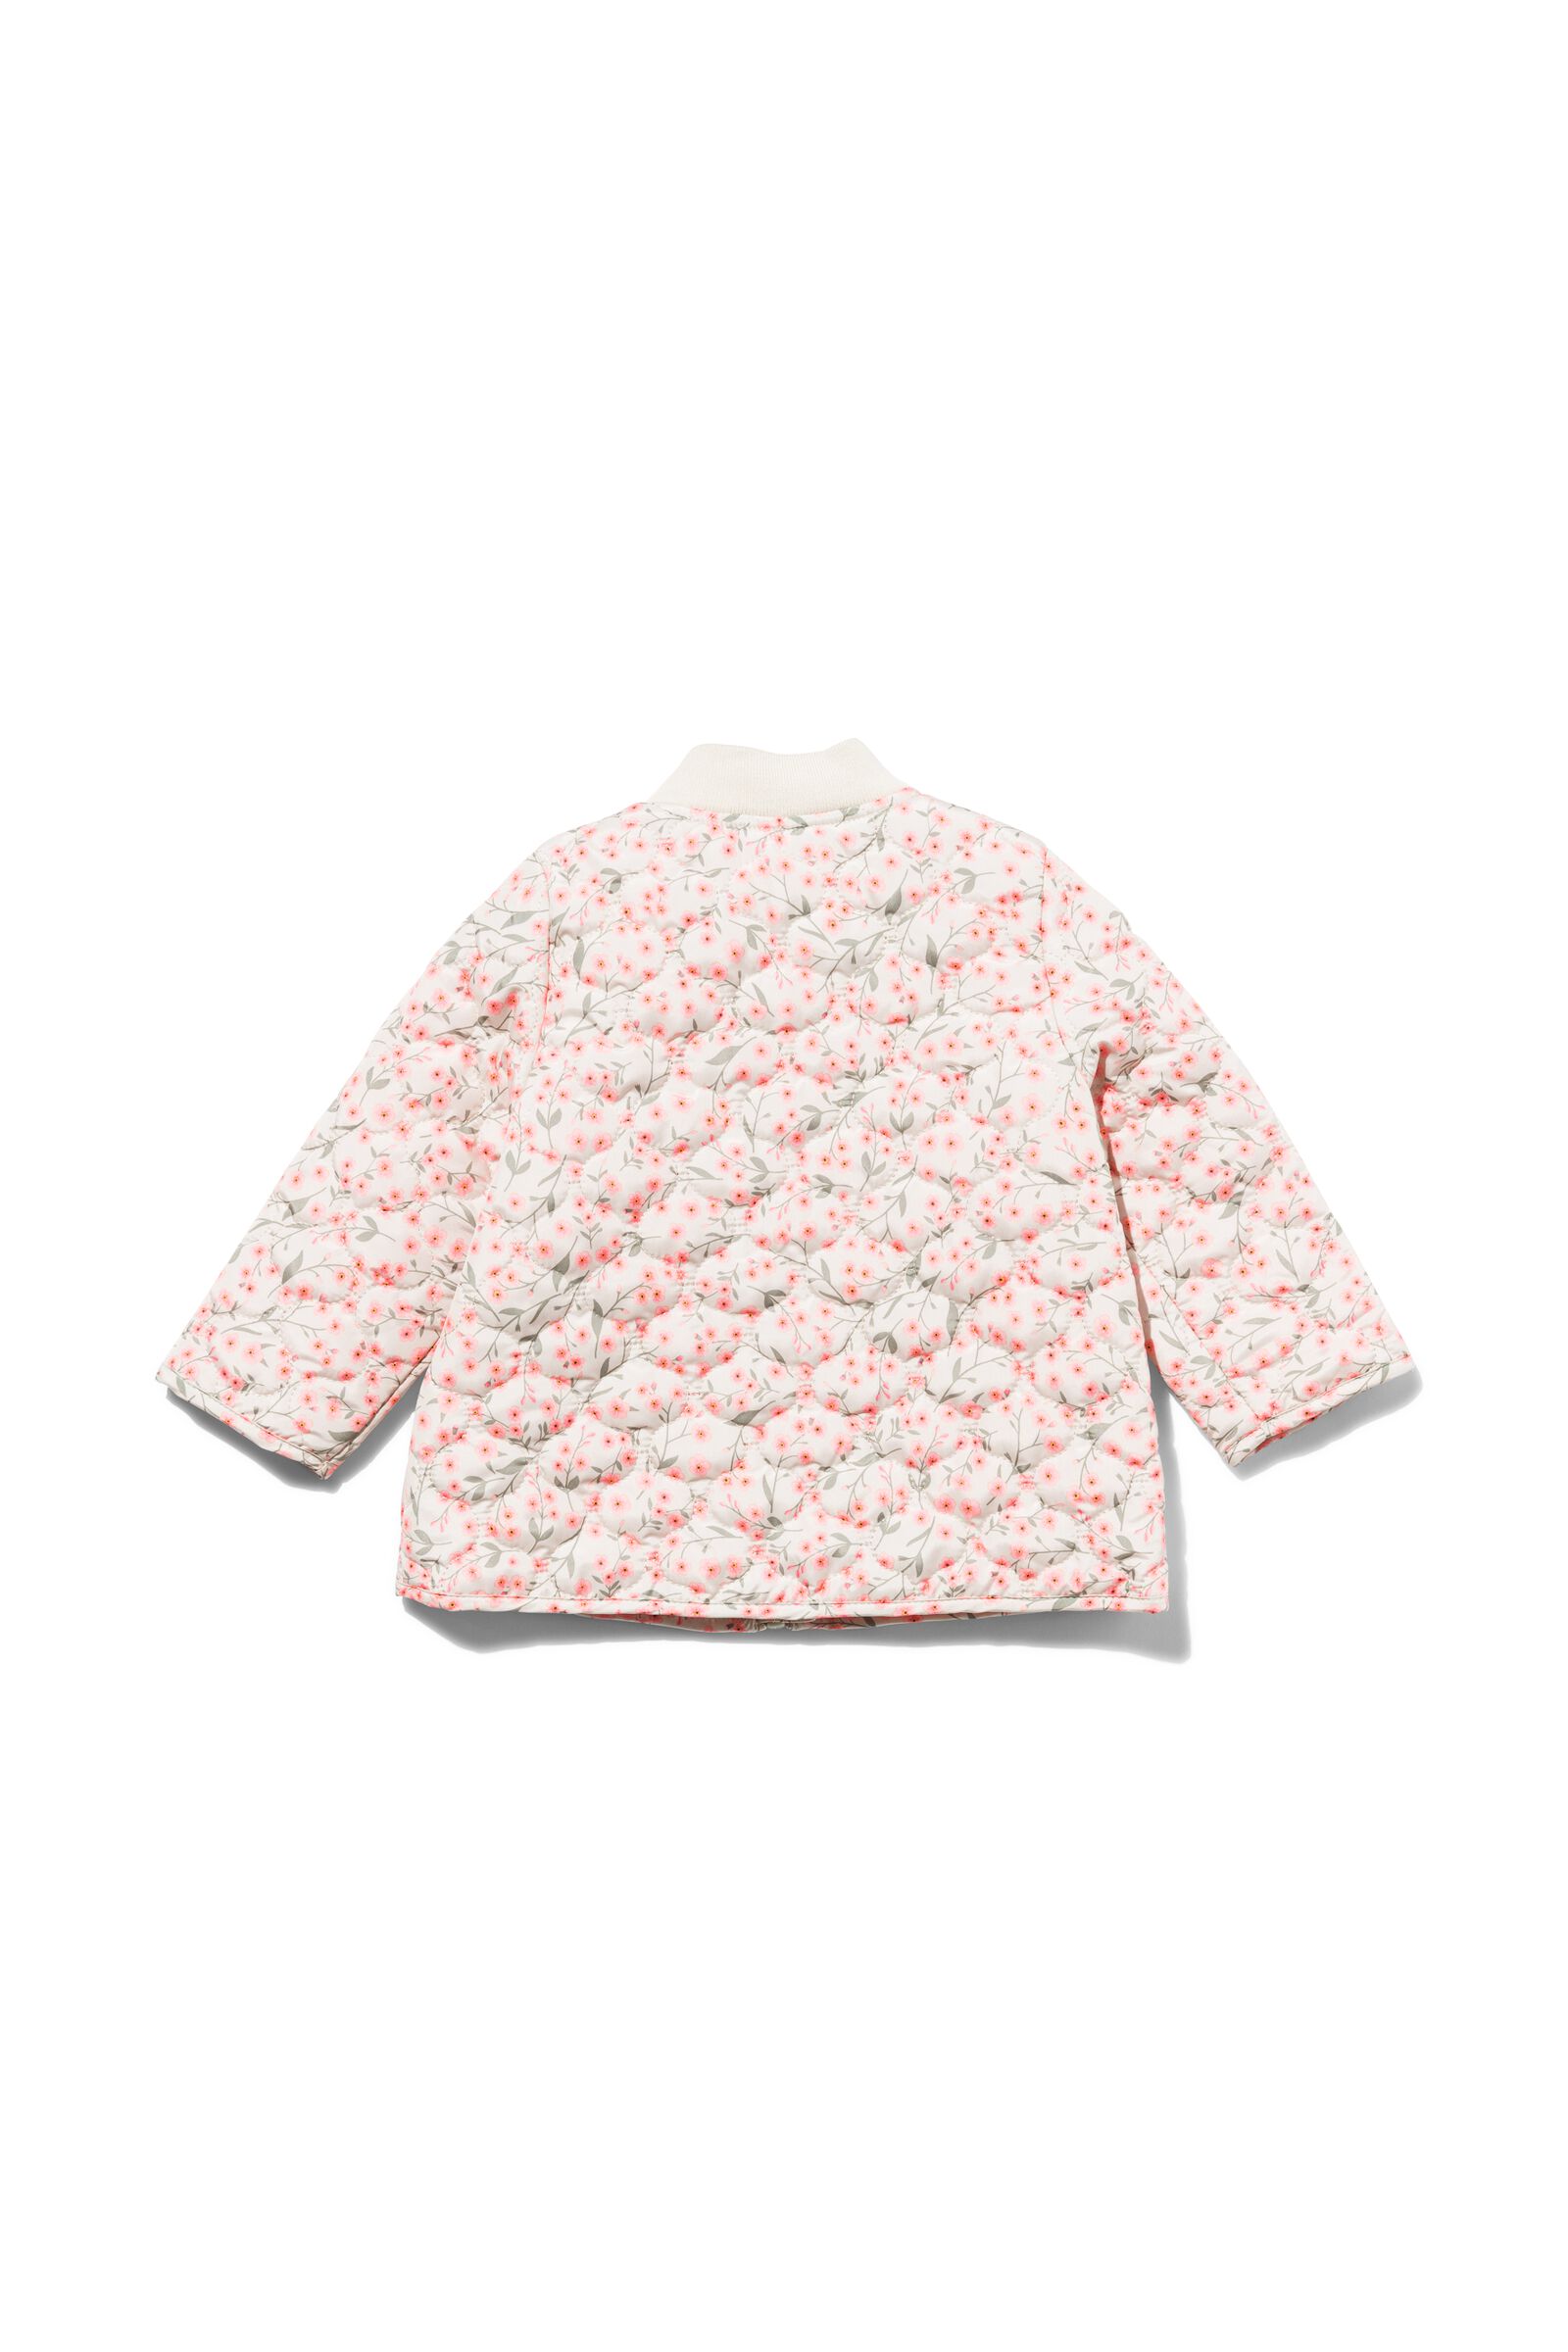 manteau bébé matelassé fleurs écru - 1000029710 - HEMA